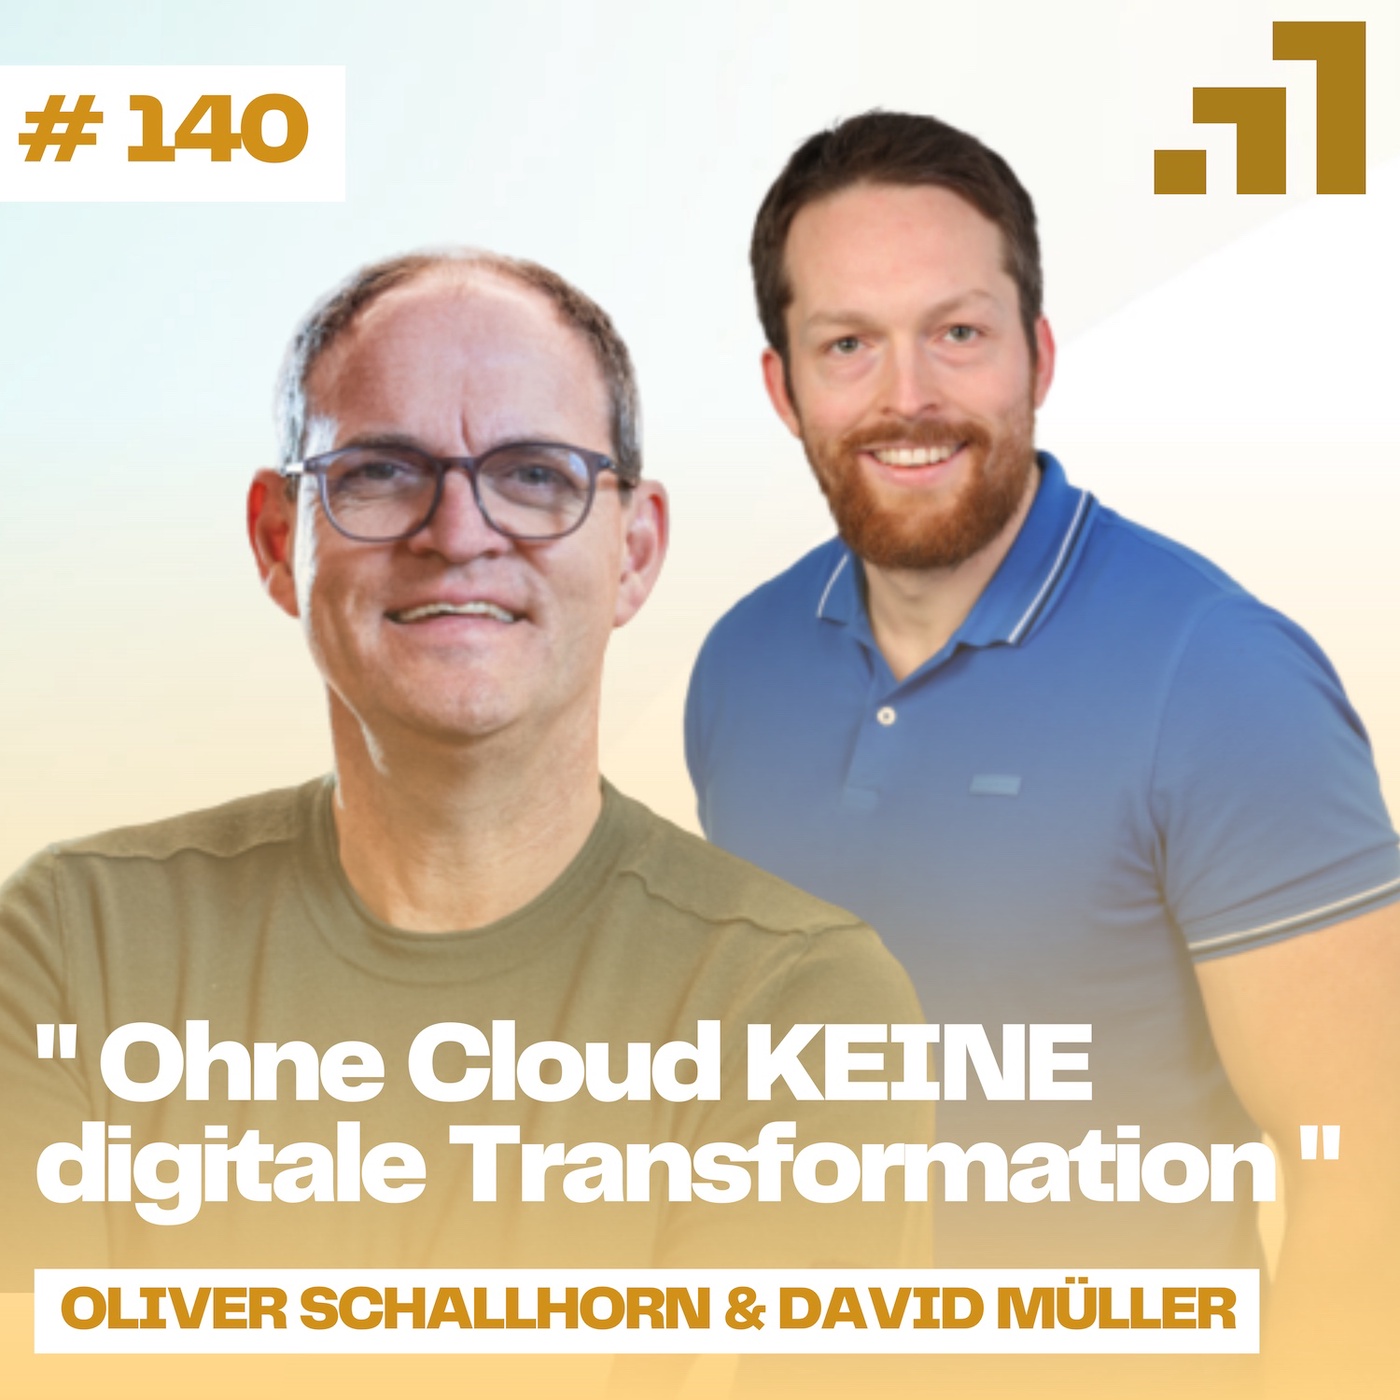 #140 ⛅ Ohne Cloud KEINE digitale Transformation: Oliver Schallhorn & David Müller von der Public Cloud Group